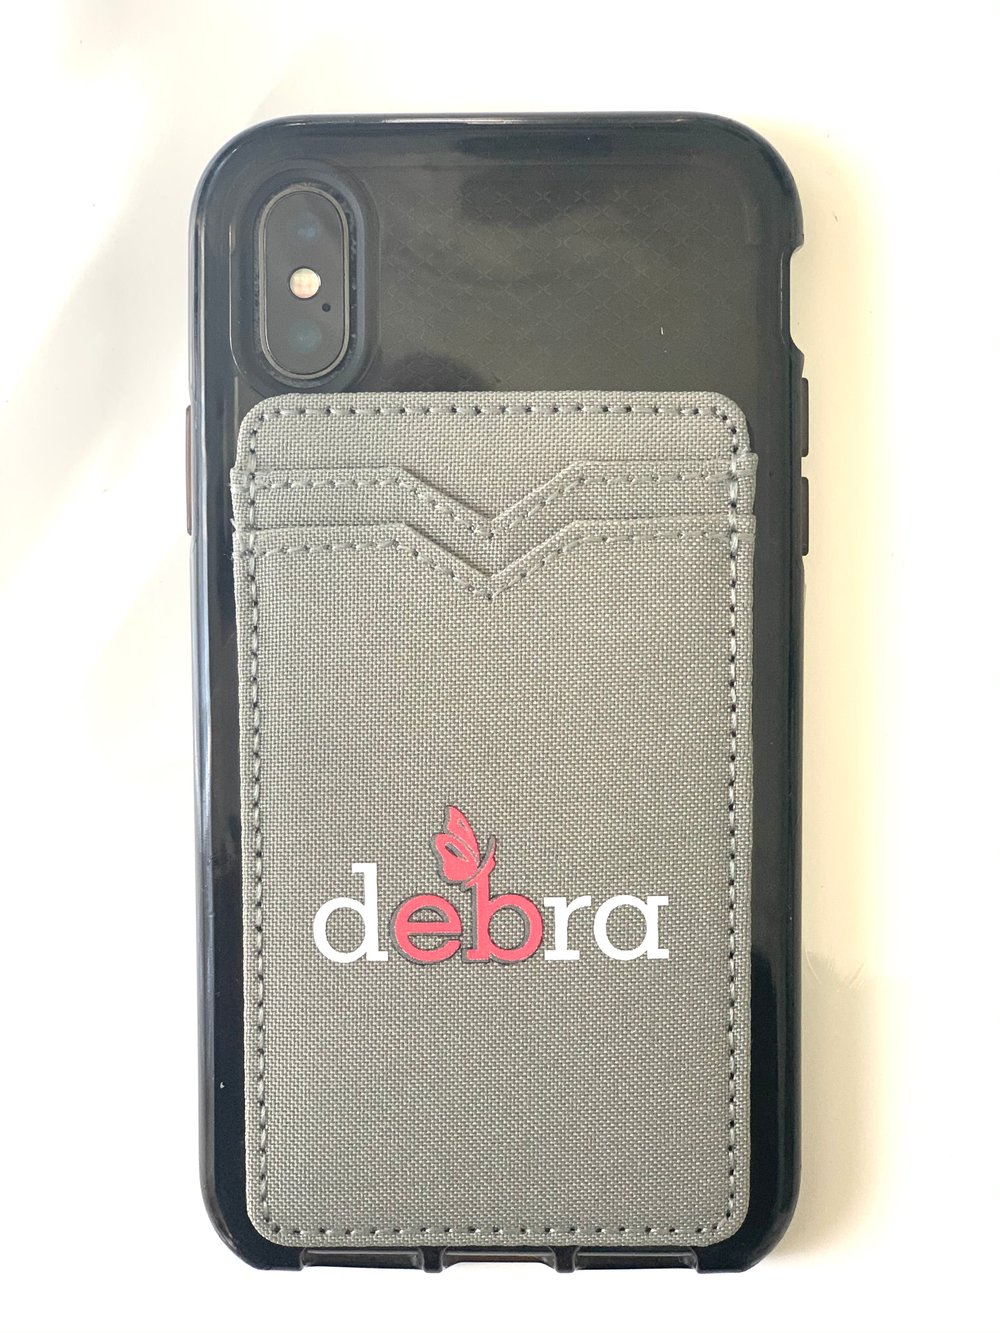 Image of debra Phone Wallet